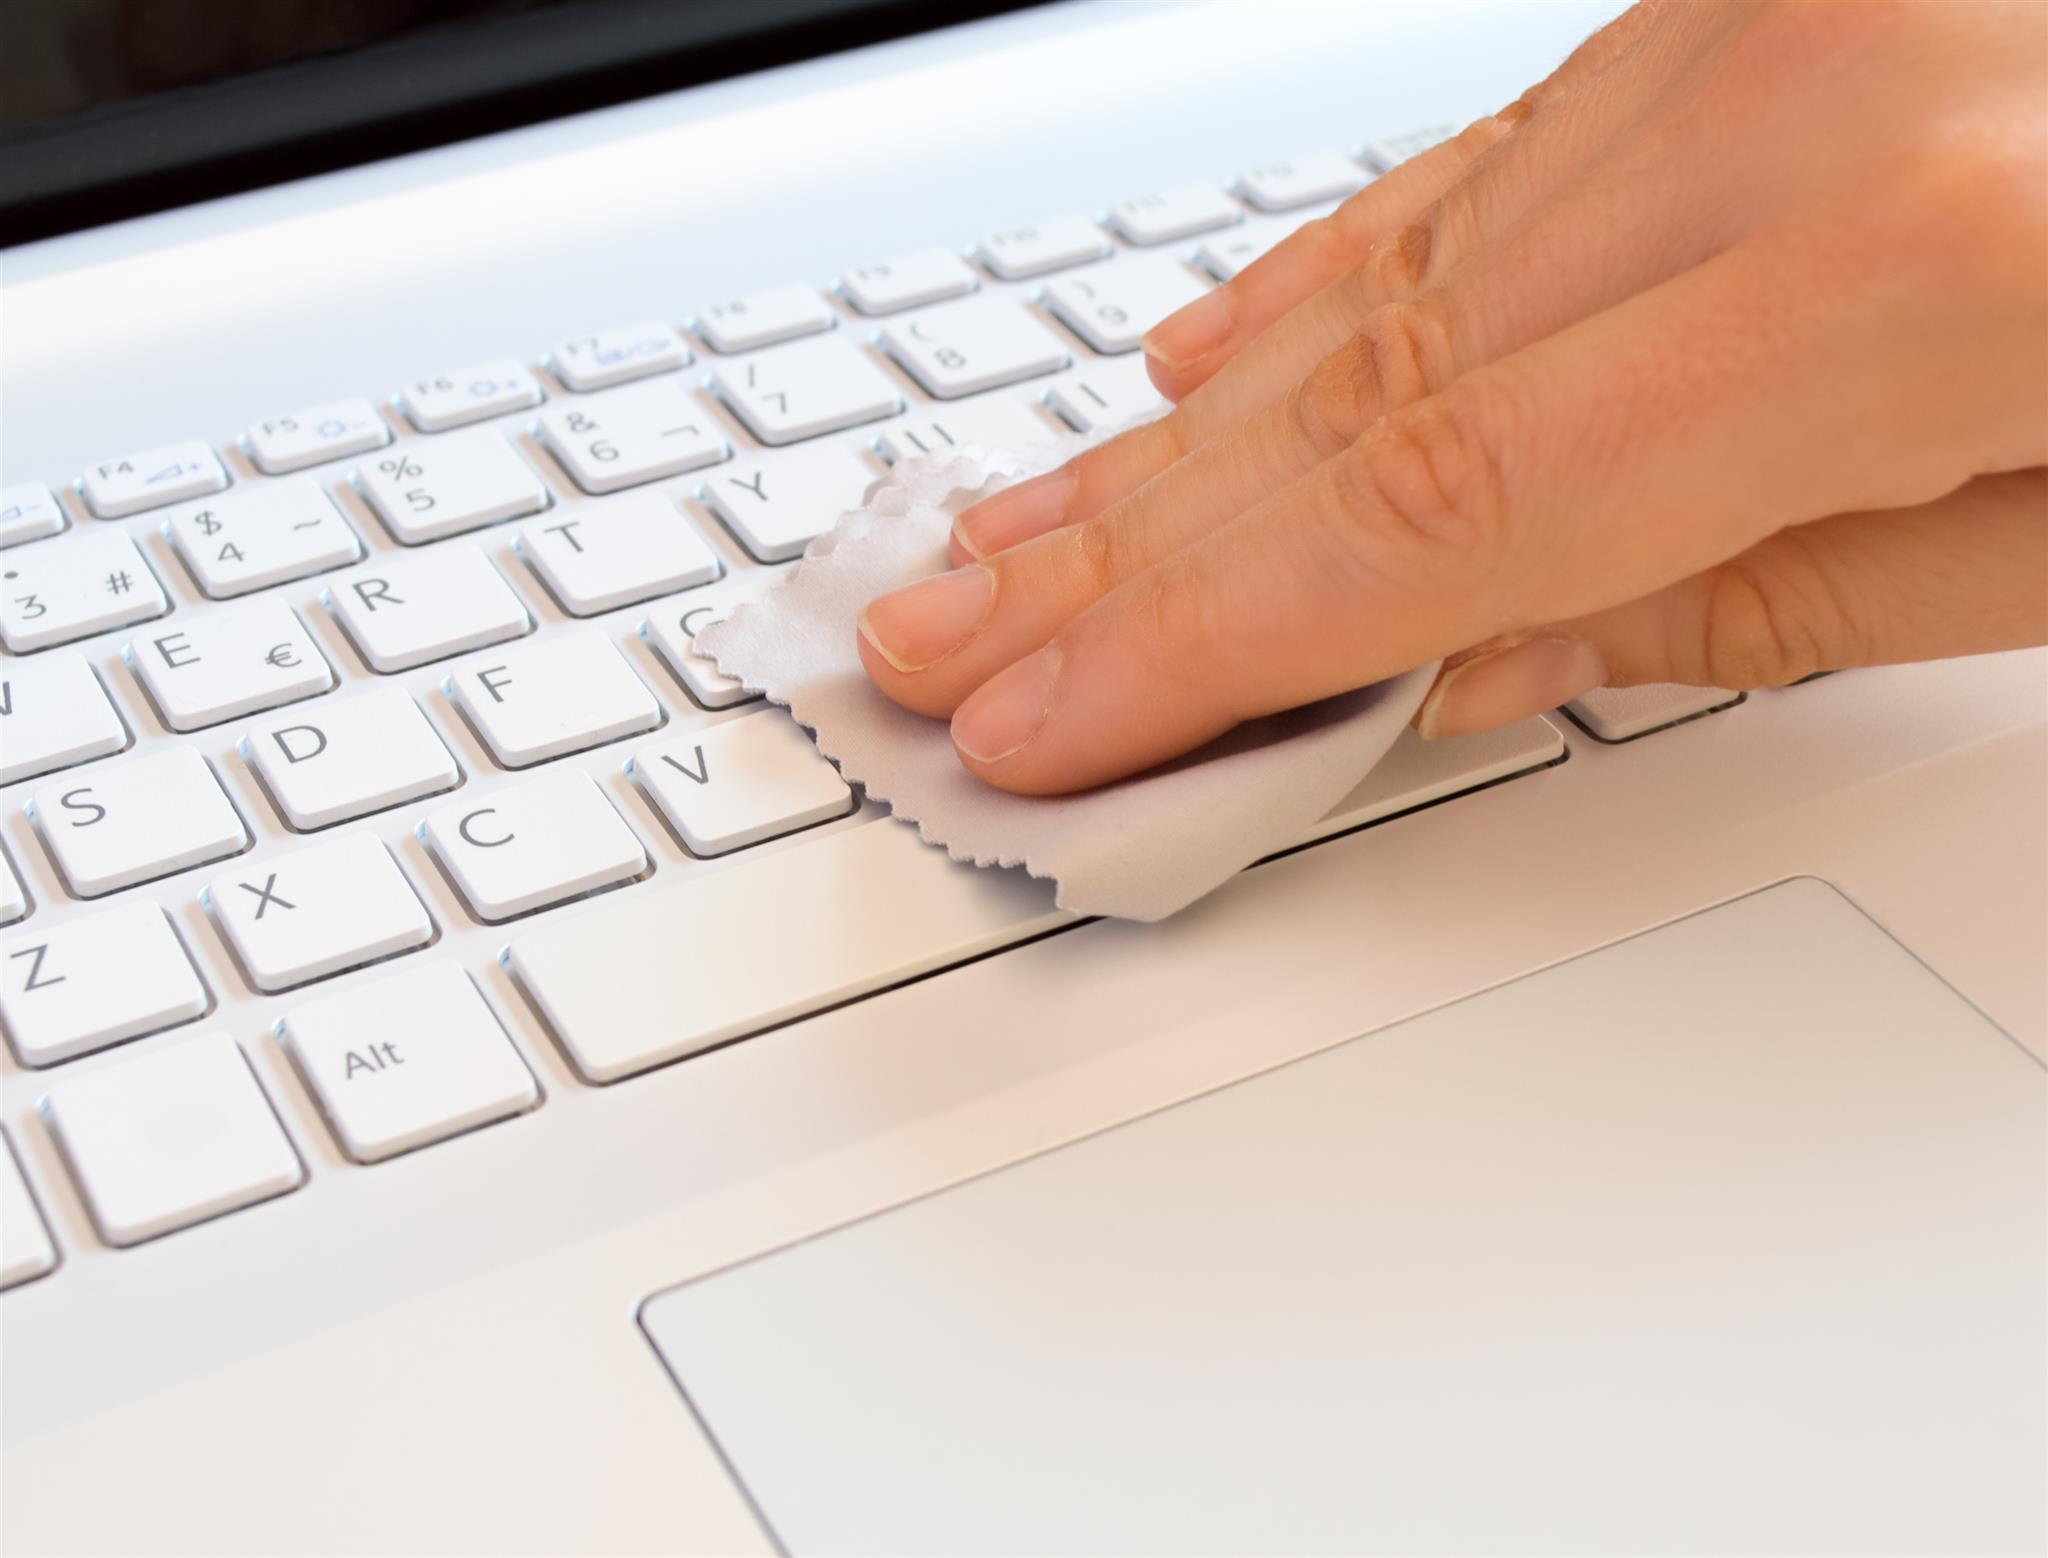 Comment bien nettoyer un clavier et une souris d'ordinateur